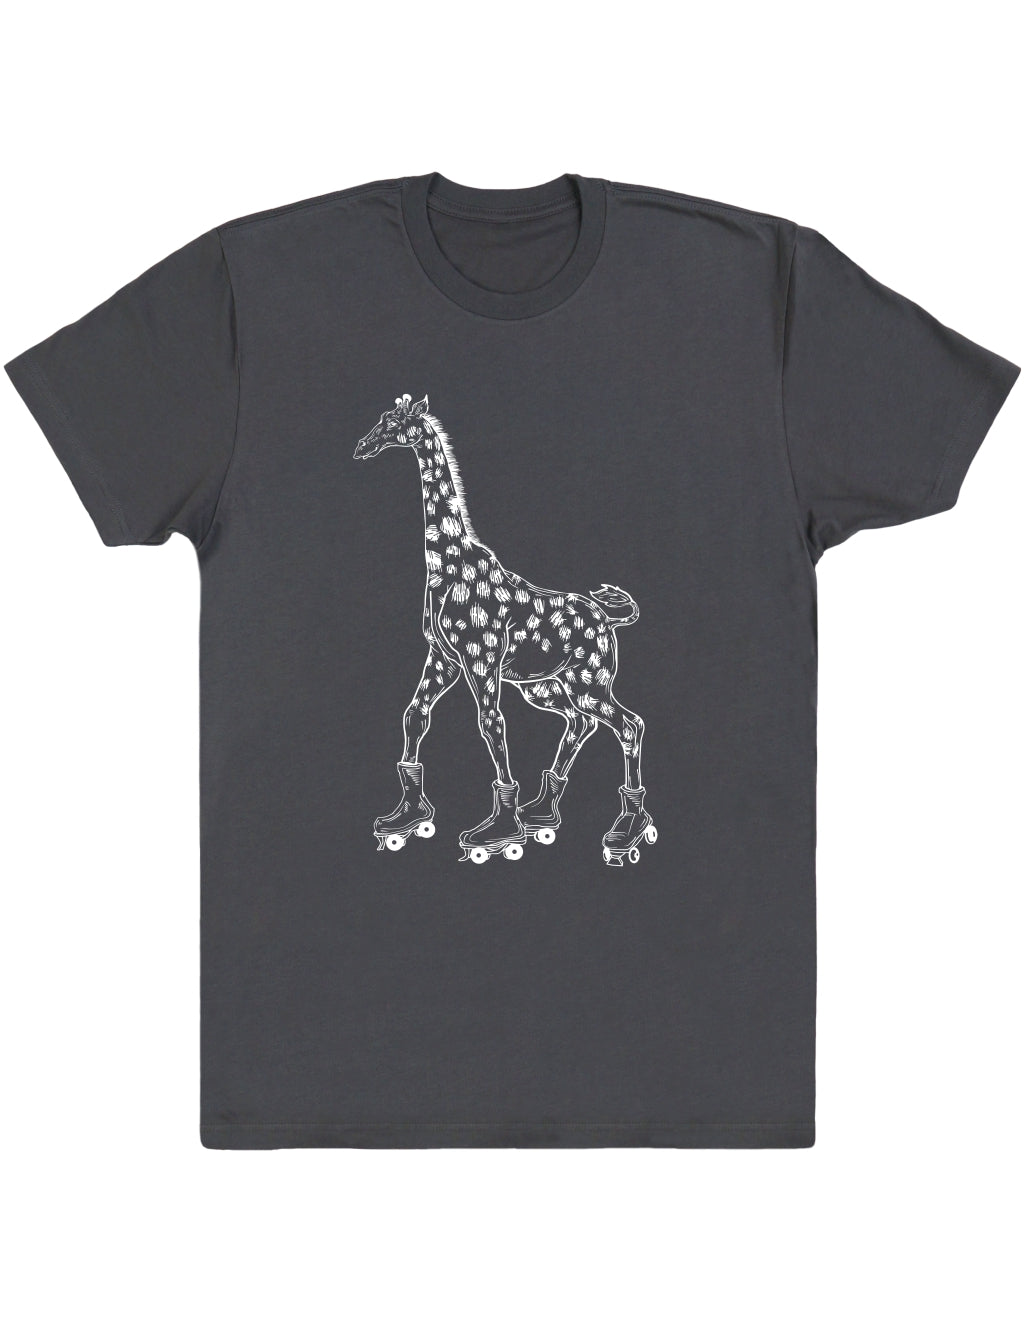 seembo-asphalt-t-shirt-with-giraffe-skater-roller-skating-design